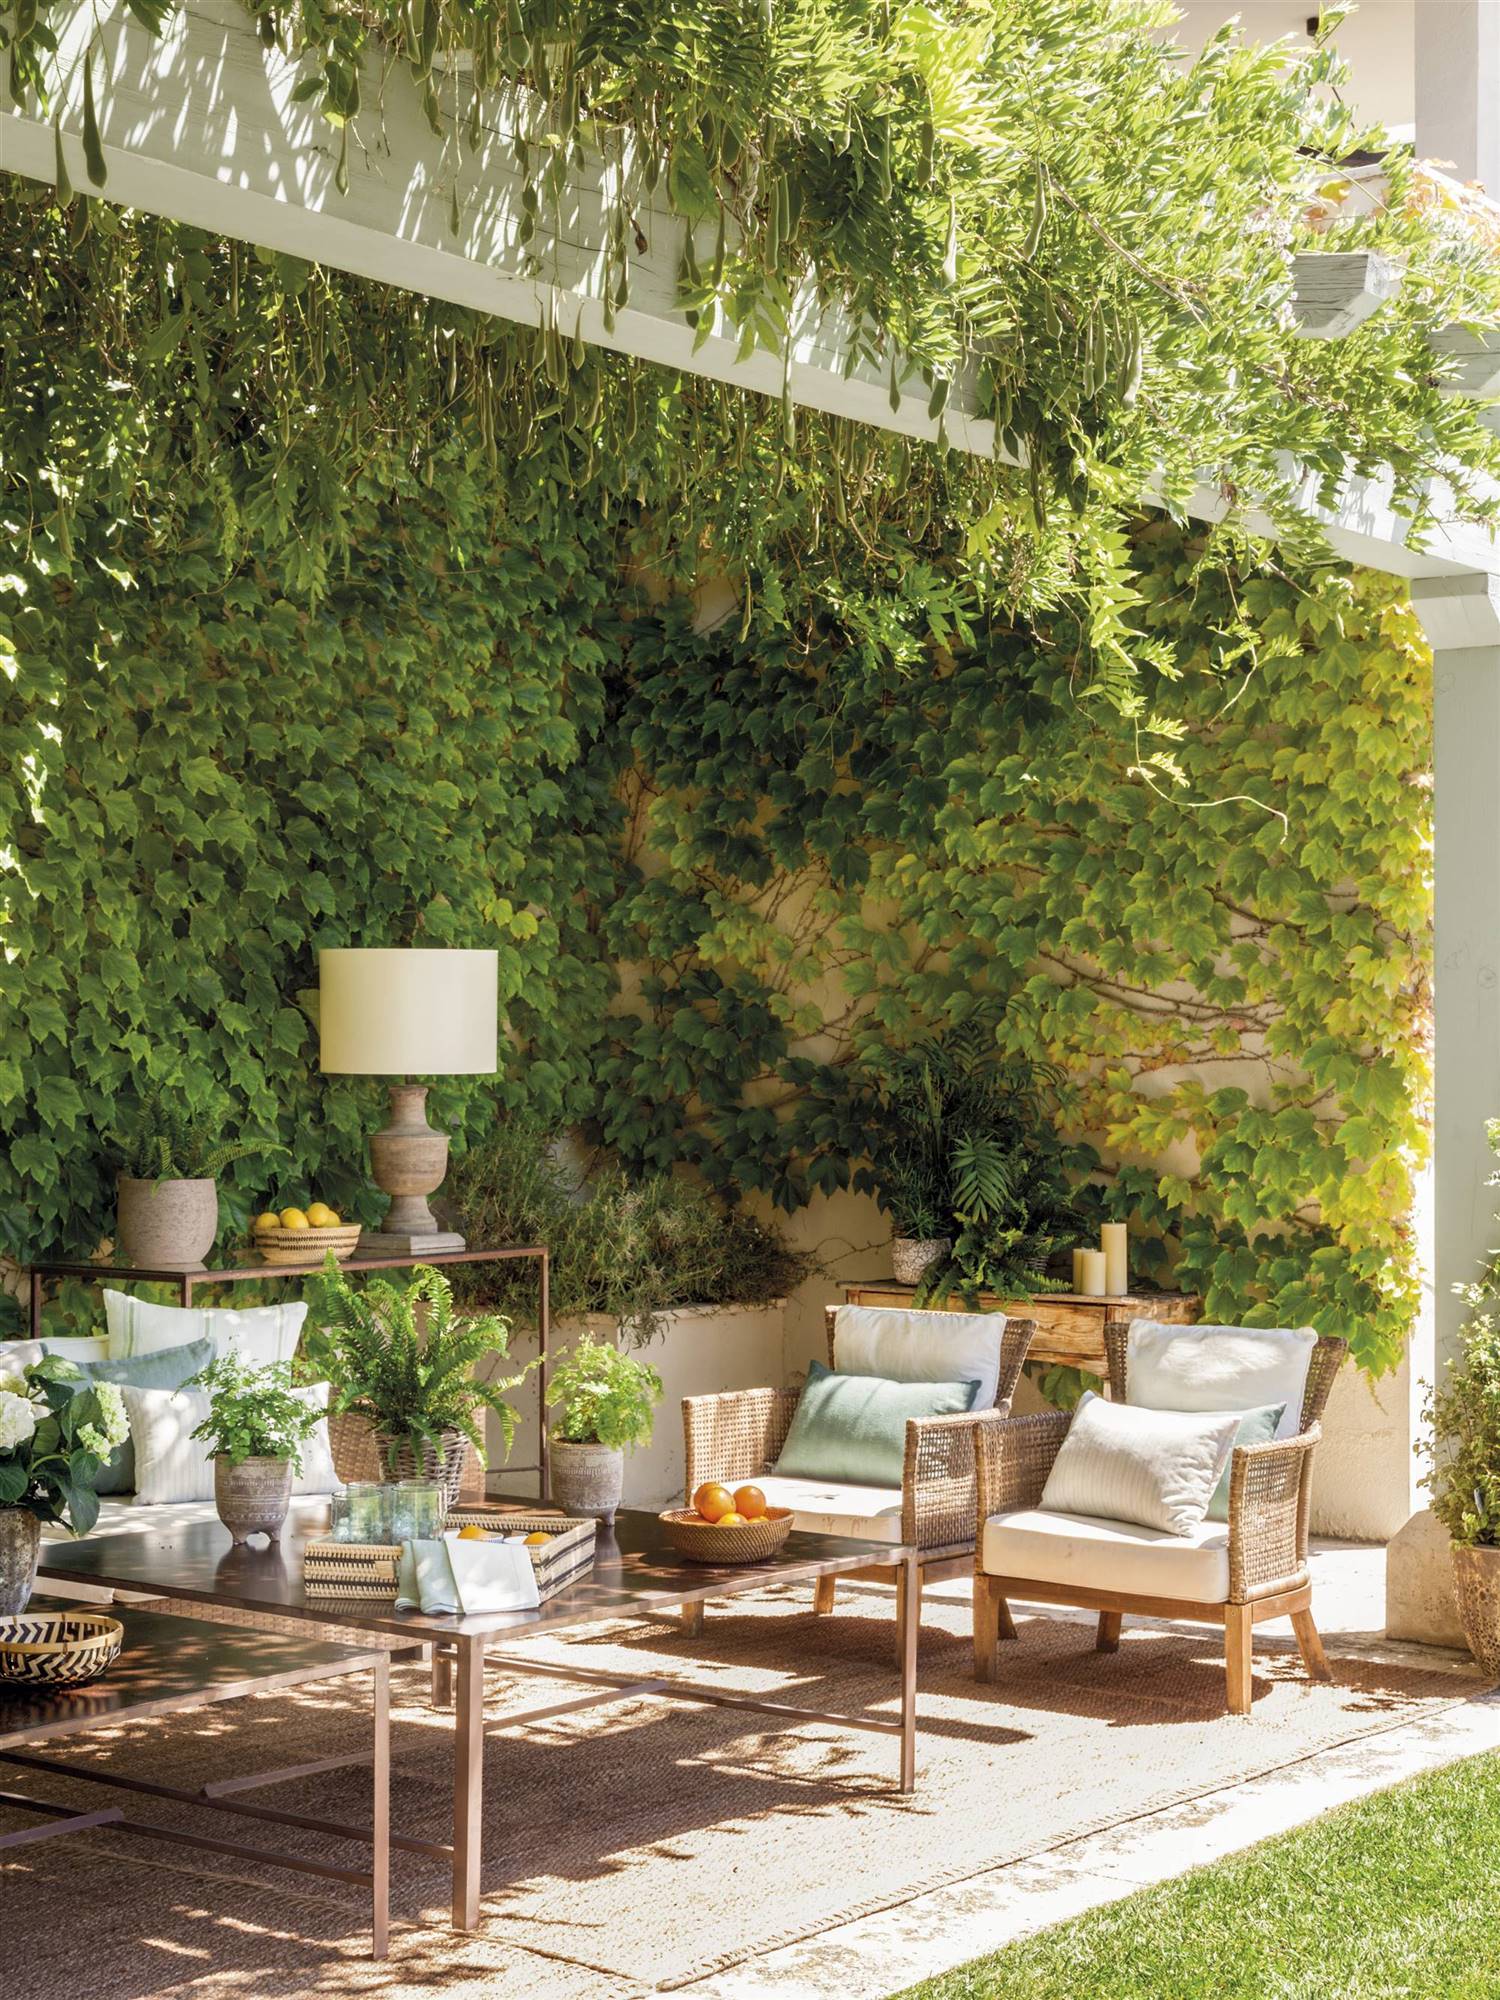 Terraza con jardín con hiedra en la pared, muebles de ratan y alfombra de fibras. 